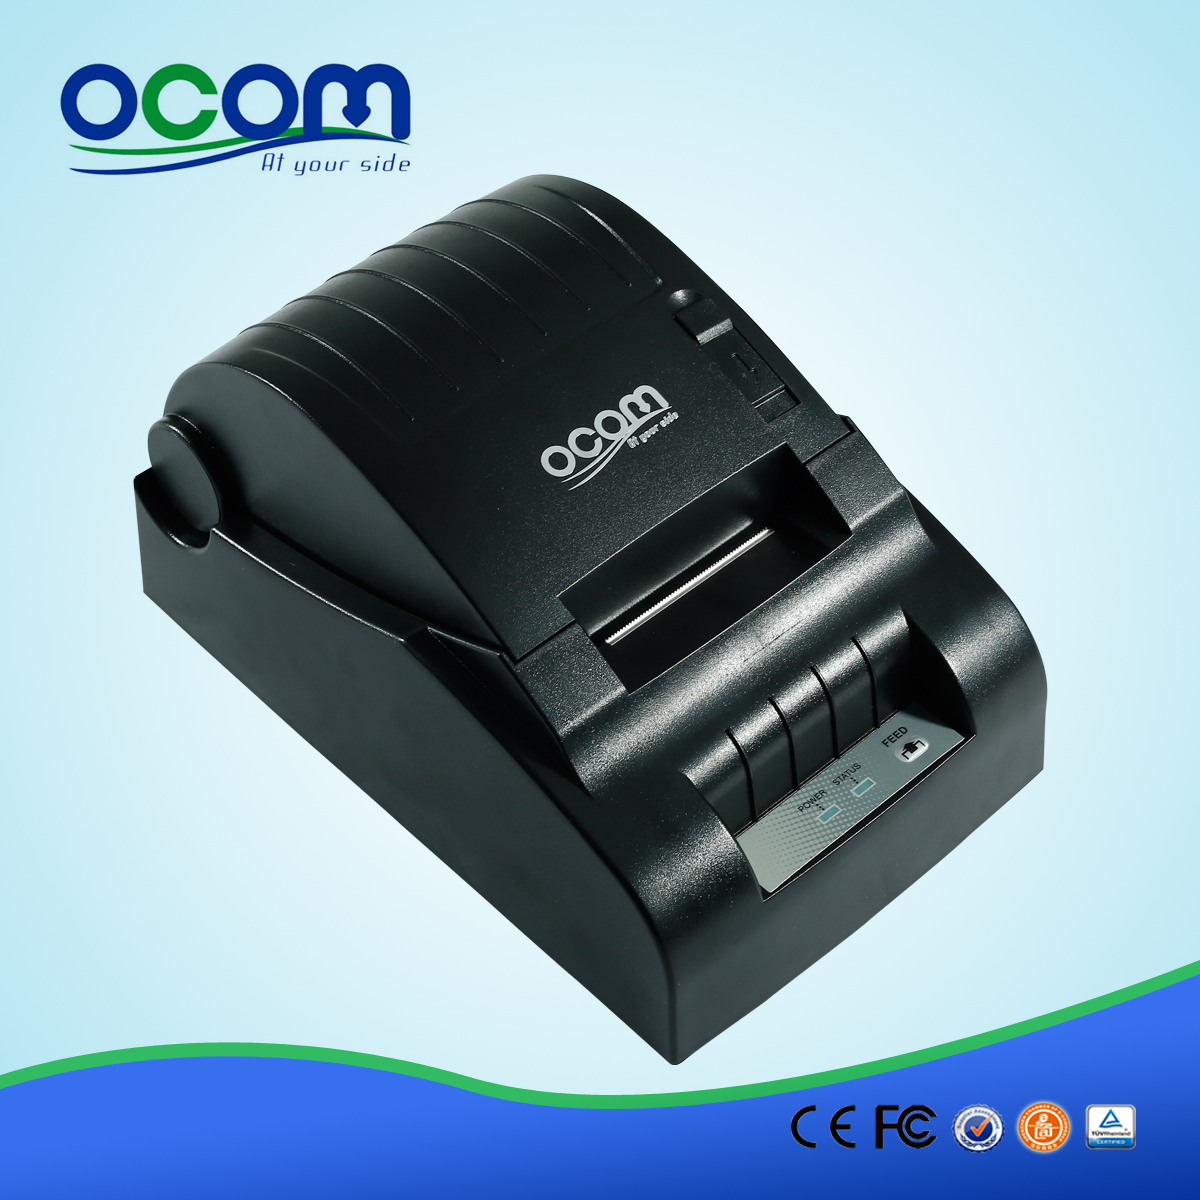 OCPP-582 billig bewegliche Receipt POS Printing-Drucker Großhandel